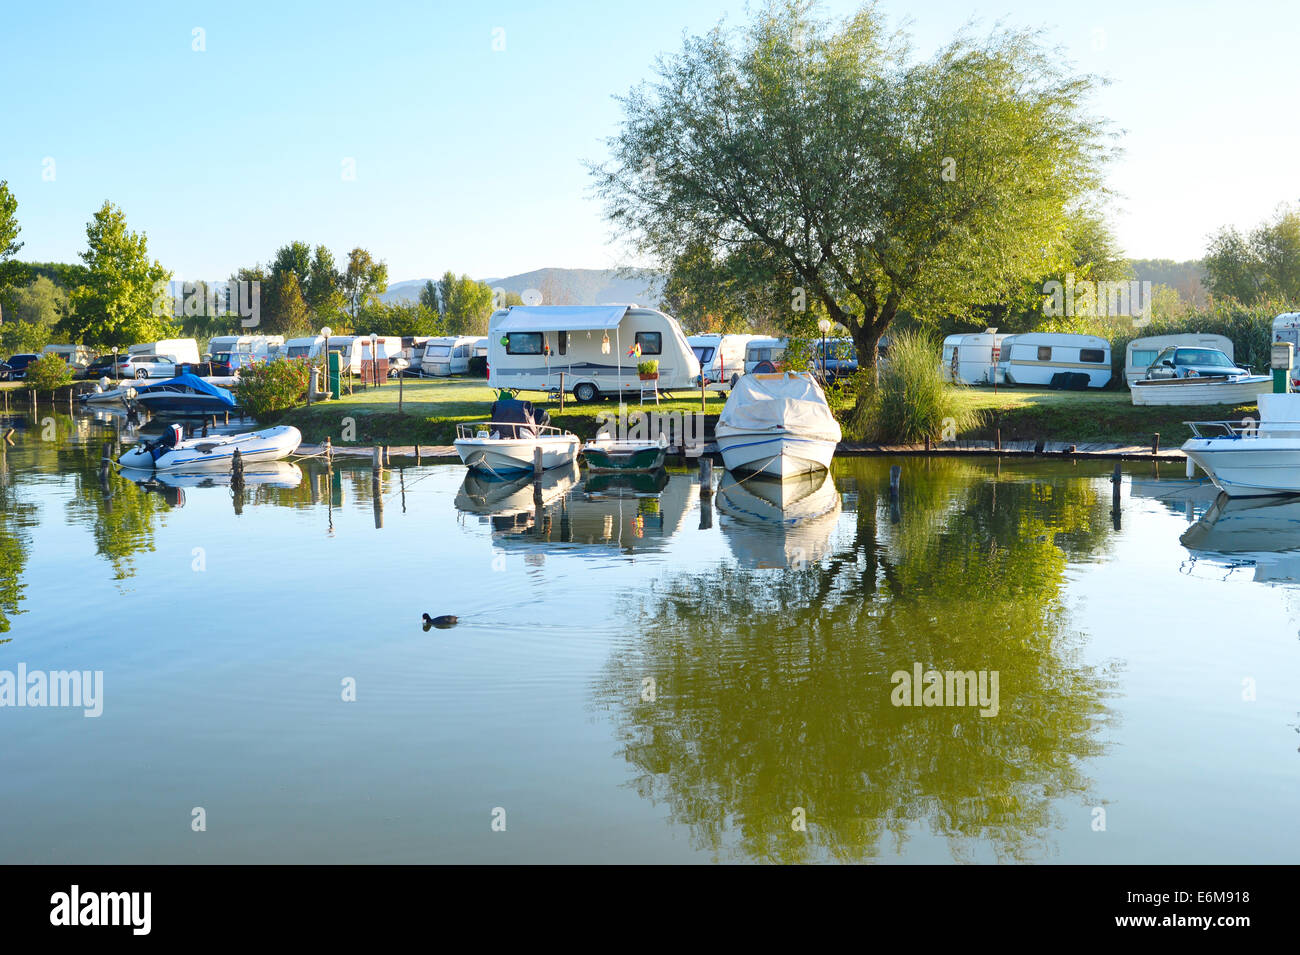 Site de camping sur un lac avec caravanes et bateaux Banque D'Images